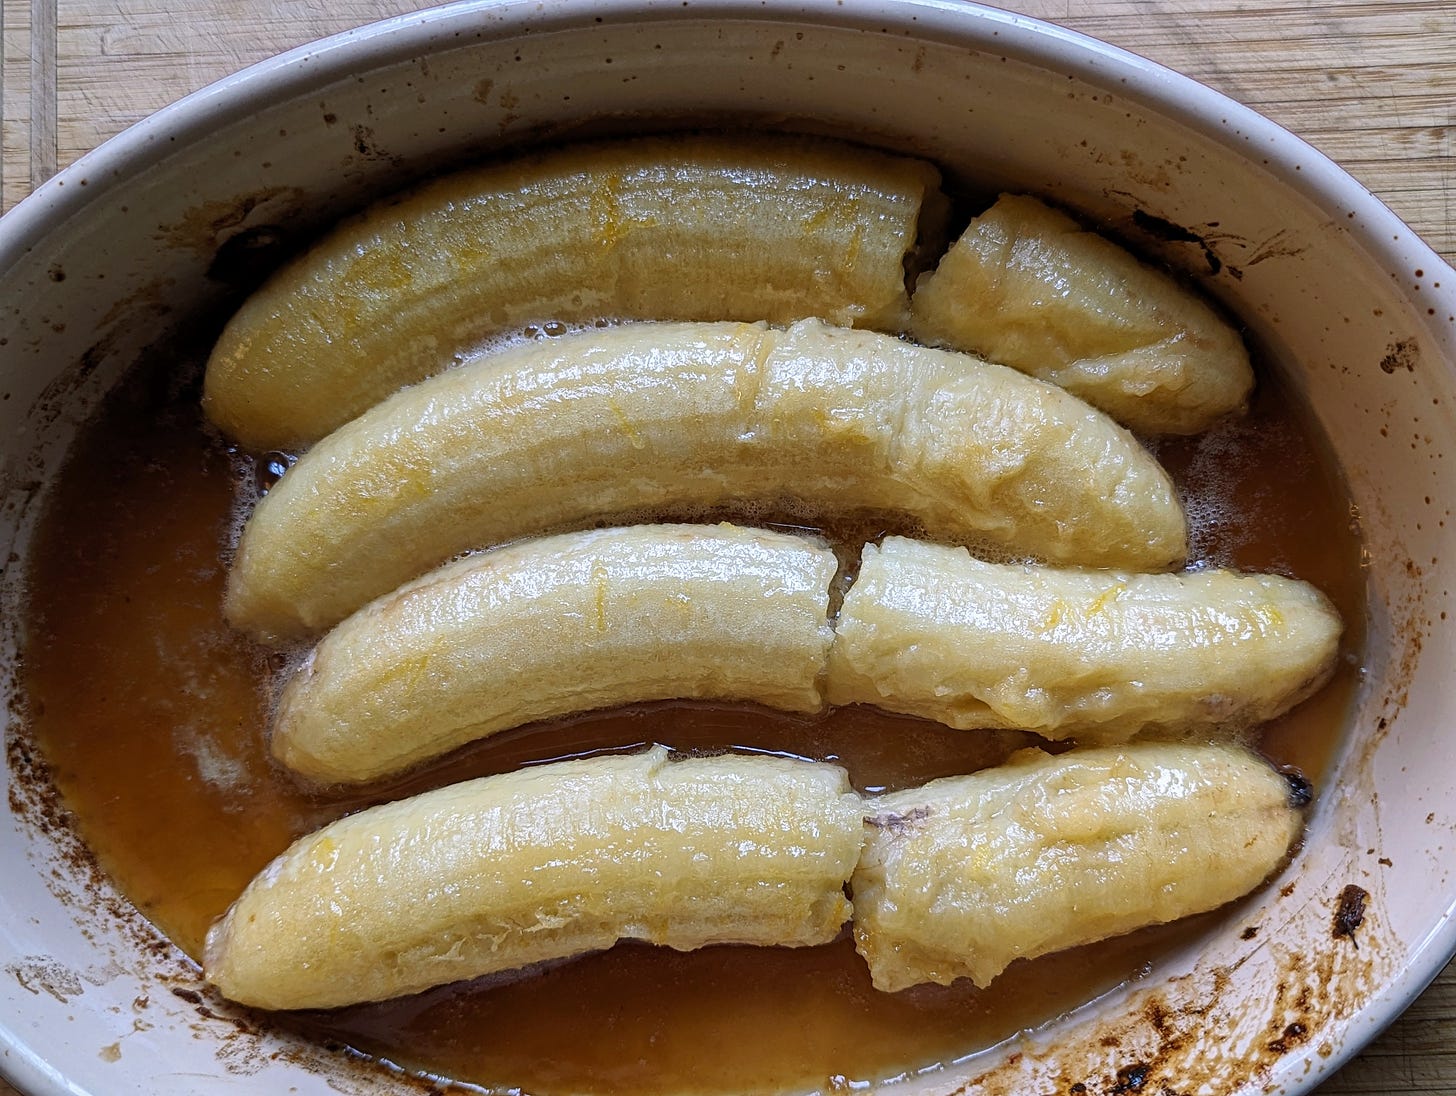 A dish of baked bananas called akwadu.